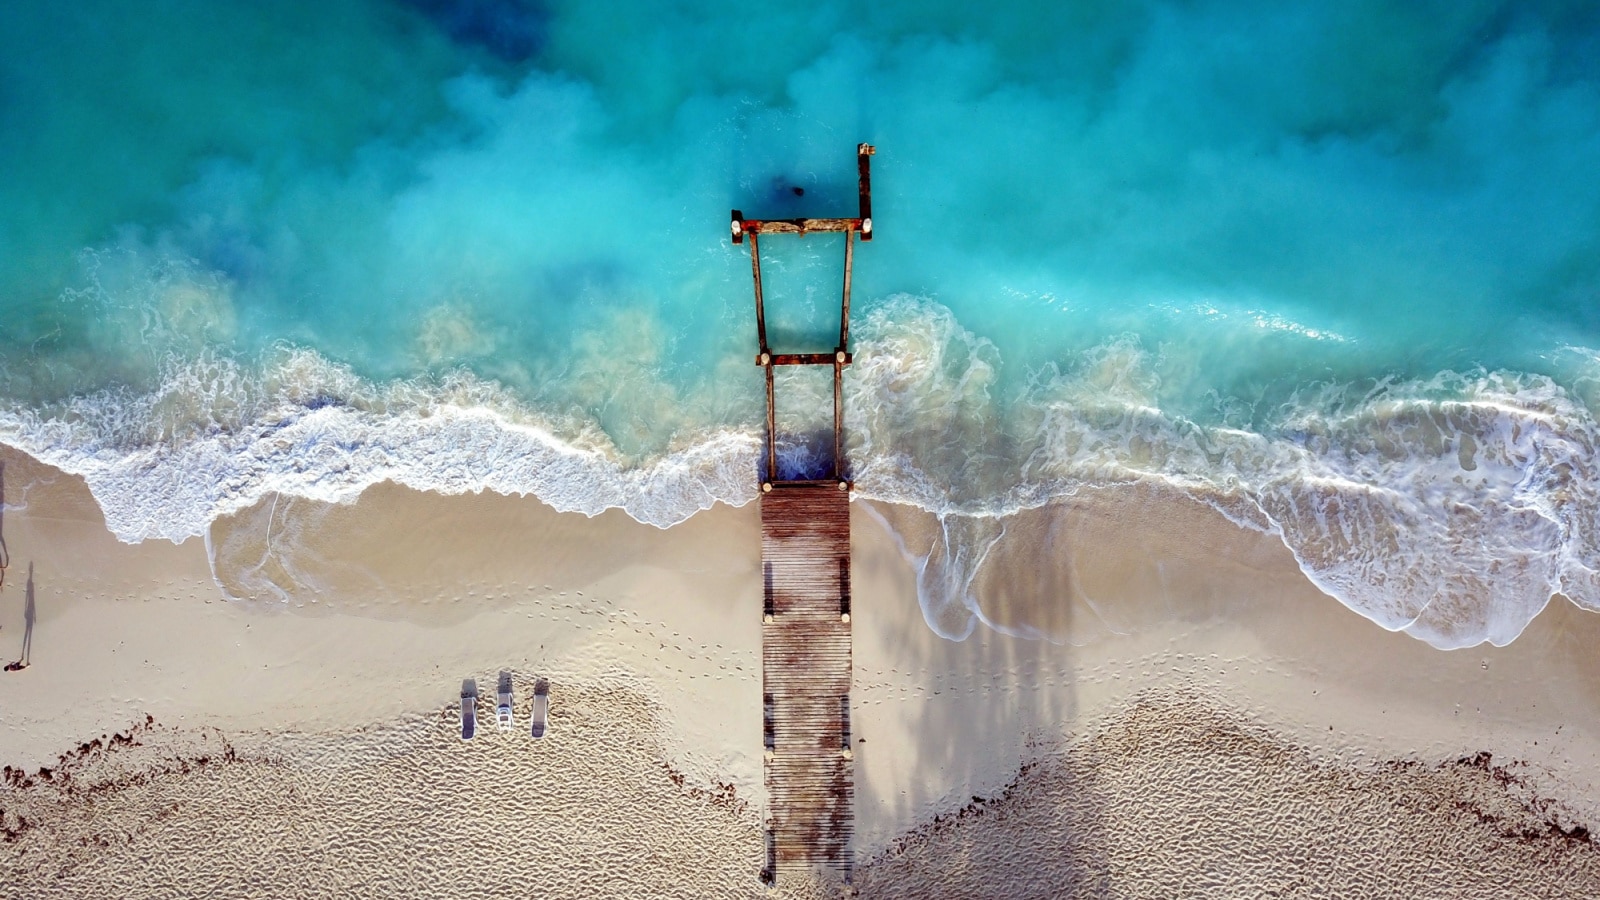 Turks Caico's Dock (Drone) taken near Club Med on Grace Bay